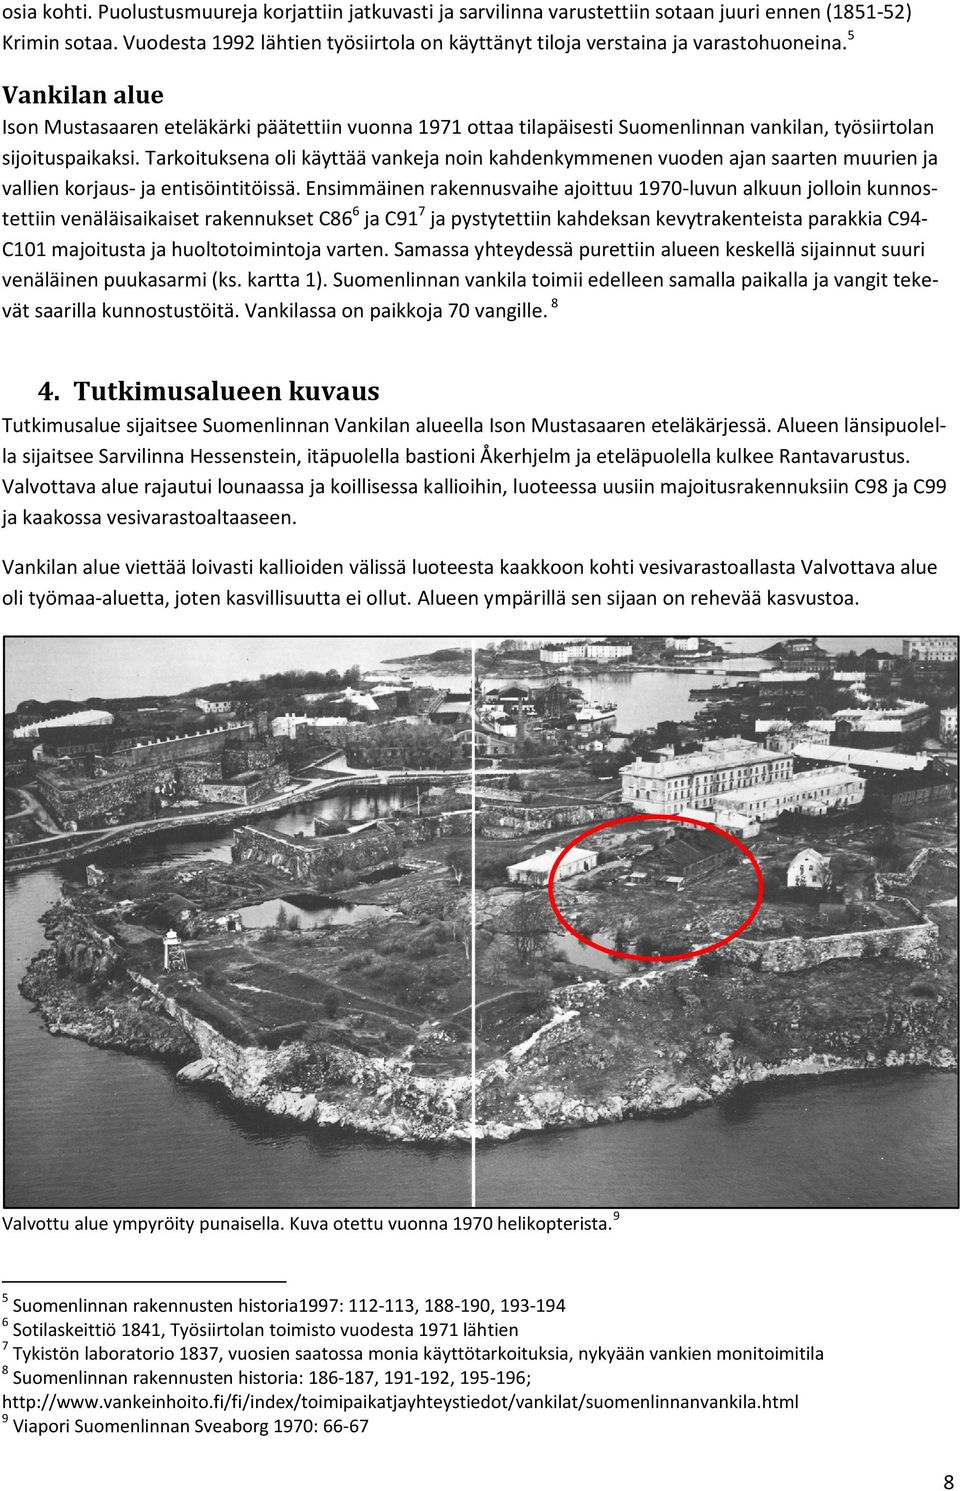 5 Vankilan alue Ison Mustasaaren eteläkärki päätettiin vuonna 1971 ottaa tilapäisesti Suomenlinnan vankilan, työsiirtolan sijoituspaikaksi.